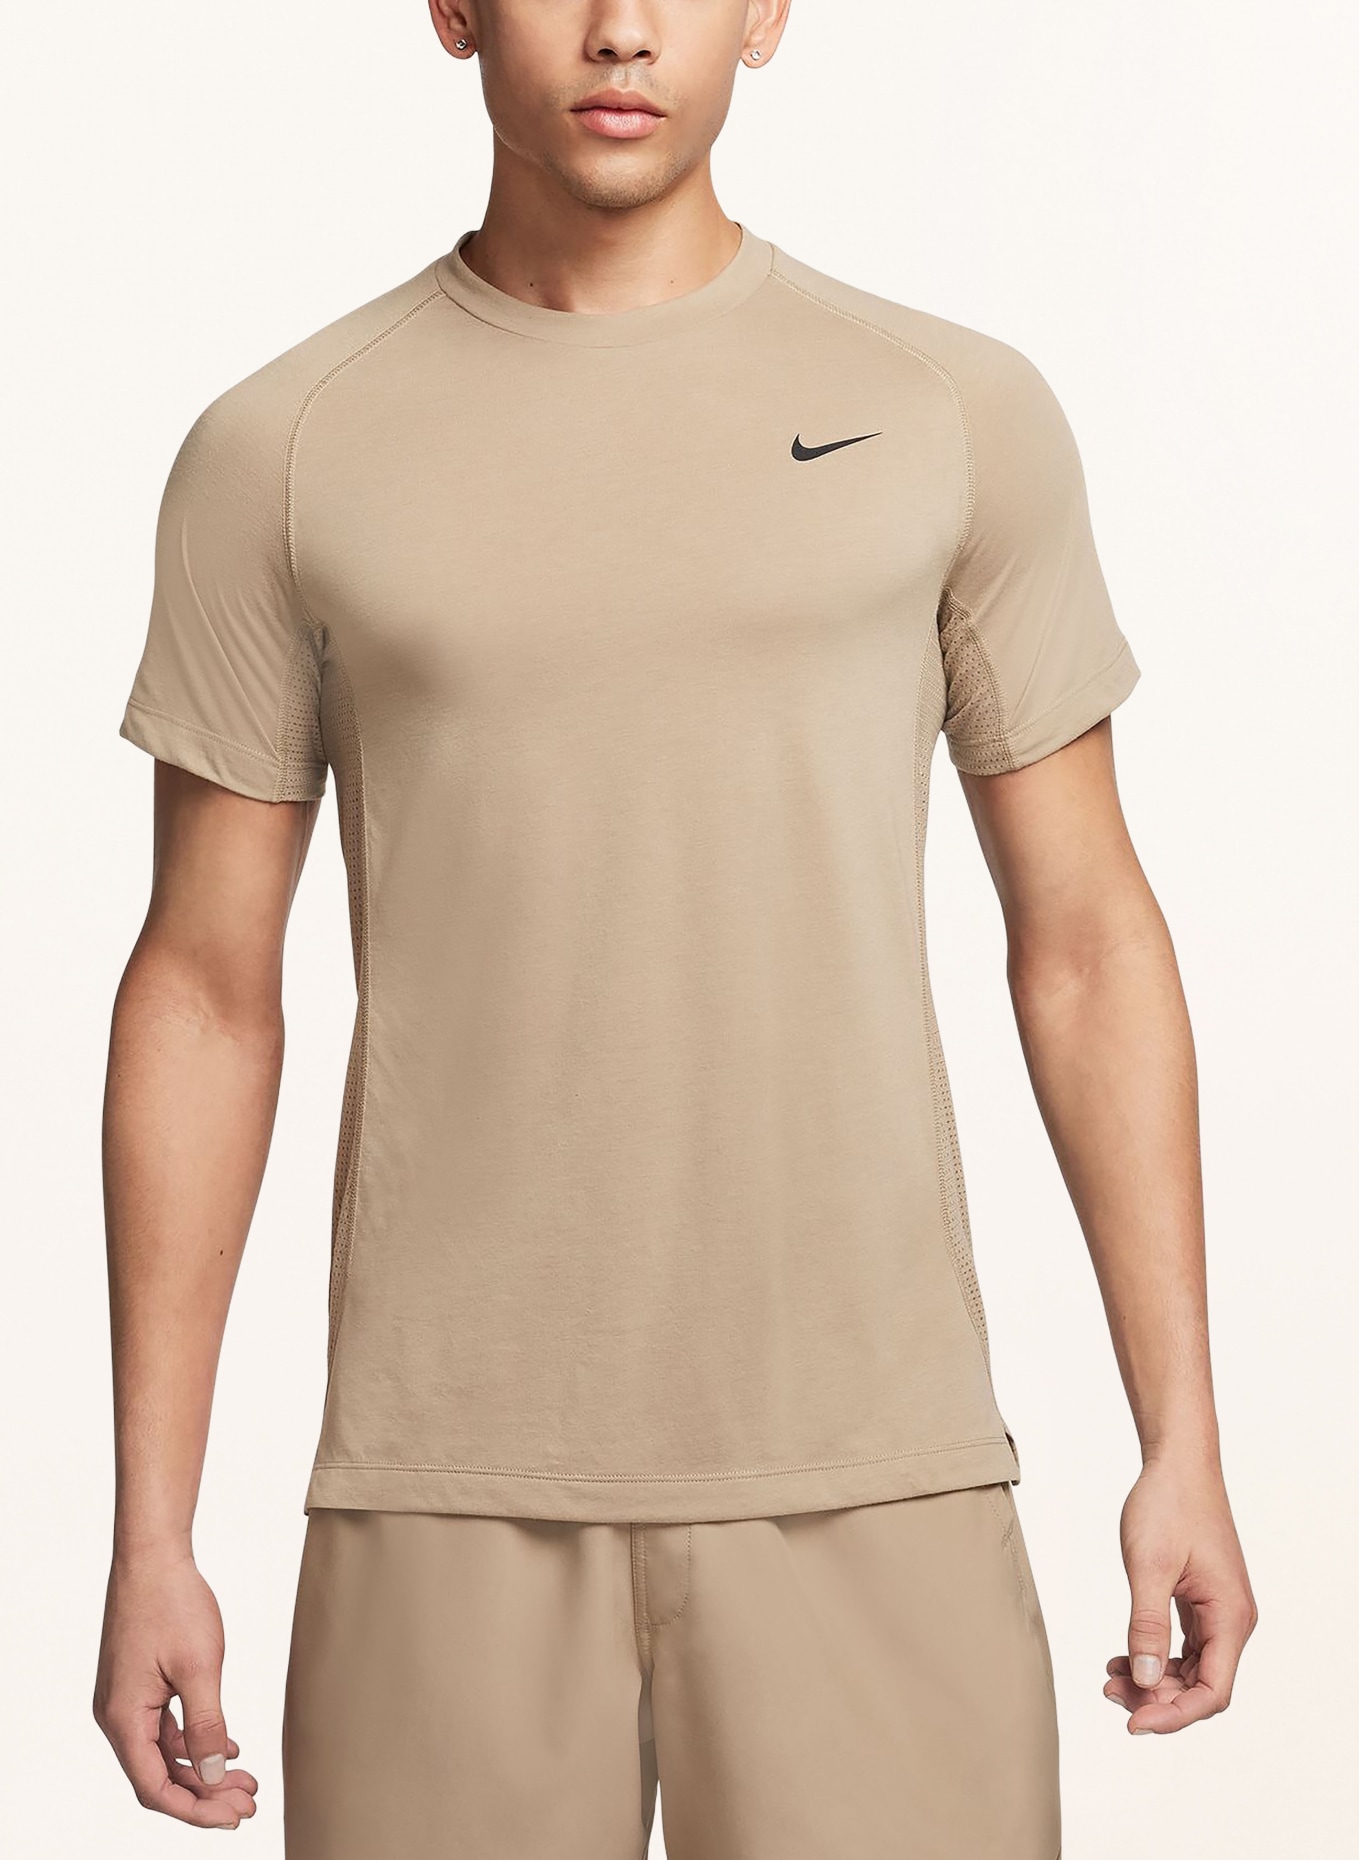 Nike T-shirt FLEX REP DRI-FIT, Color: KHAKI (Image 2)